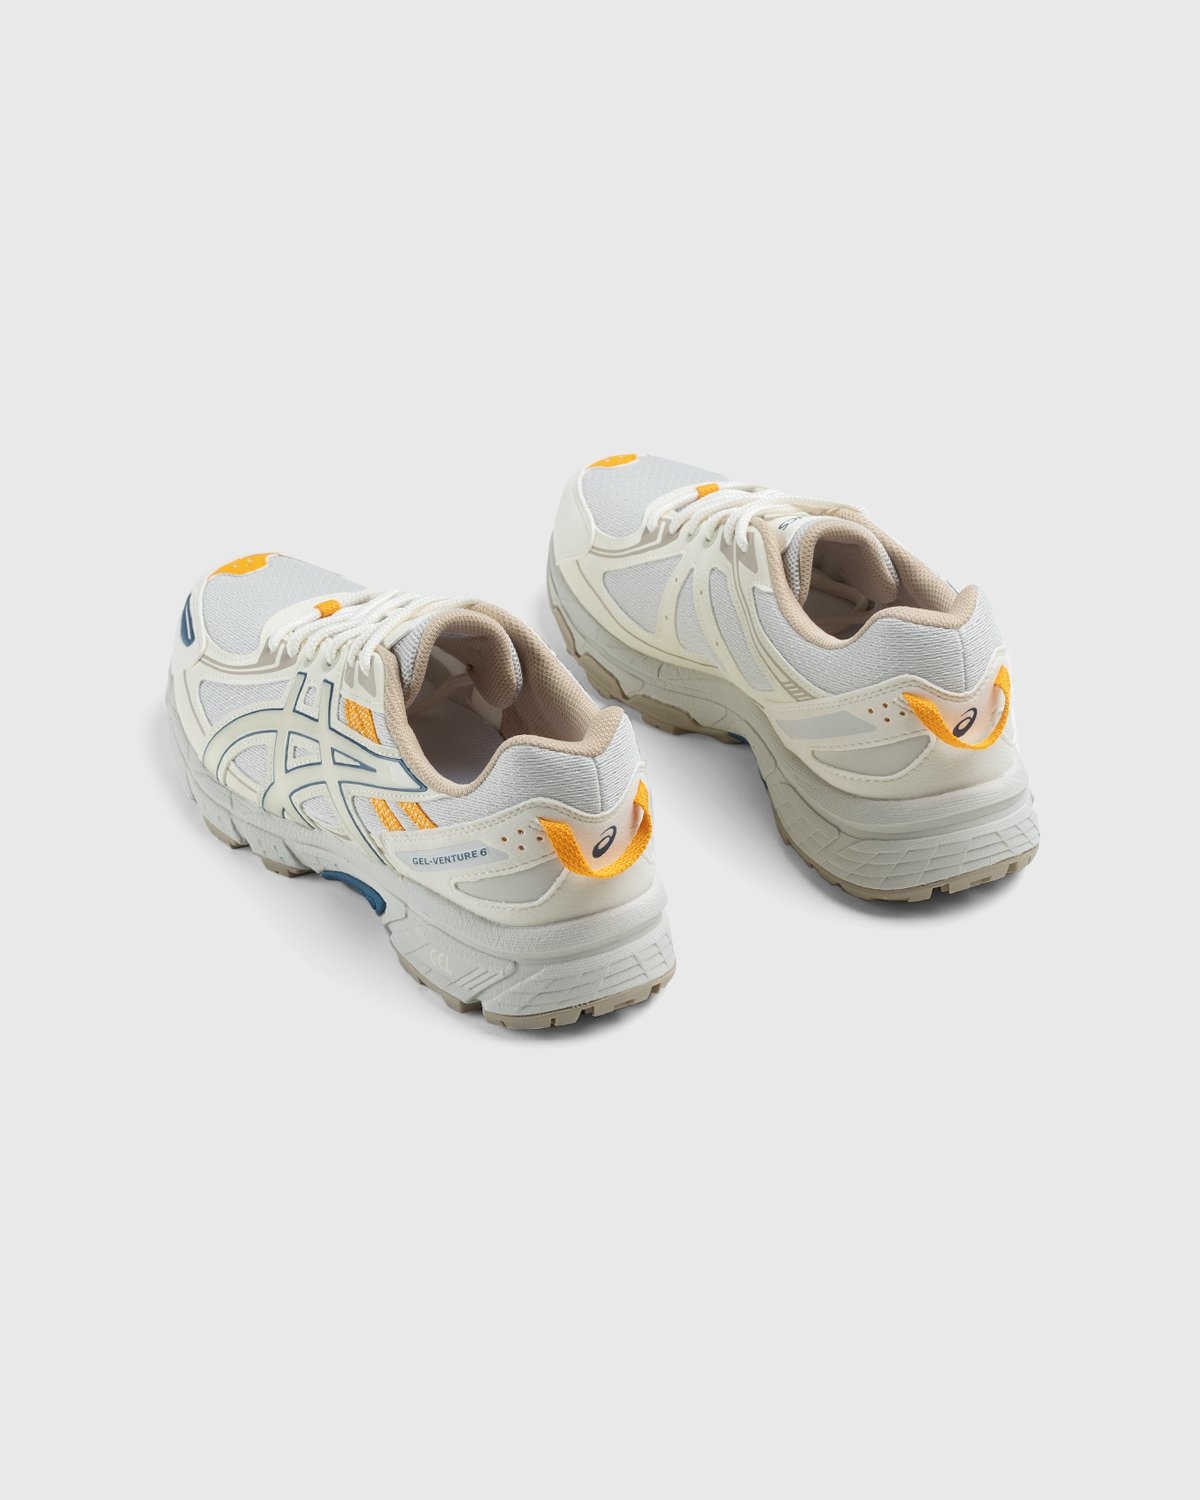 asics – Gel-Venture 6 Smoke Grey Birch - Sneakers - White - Image 4